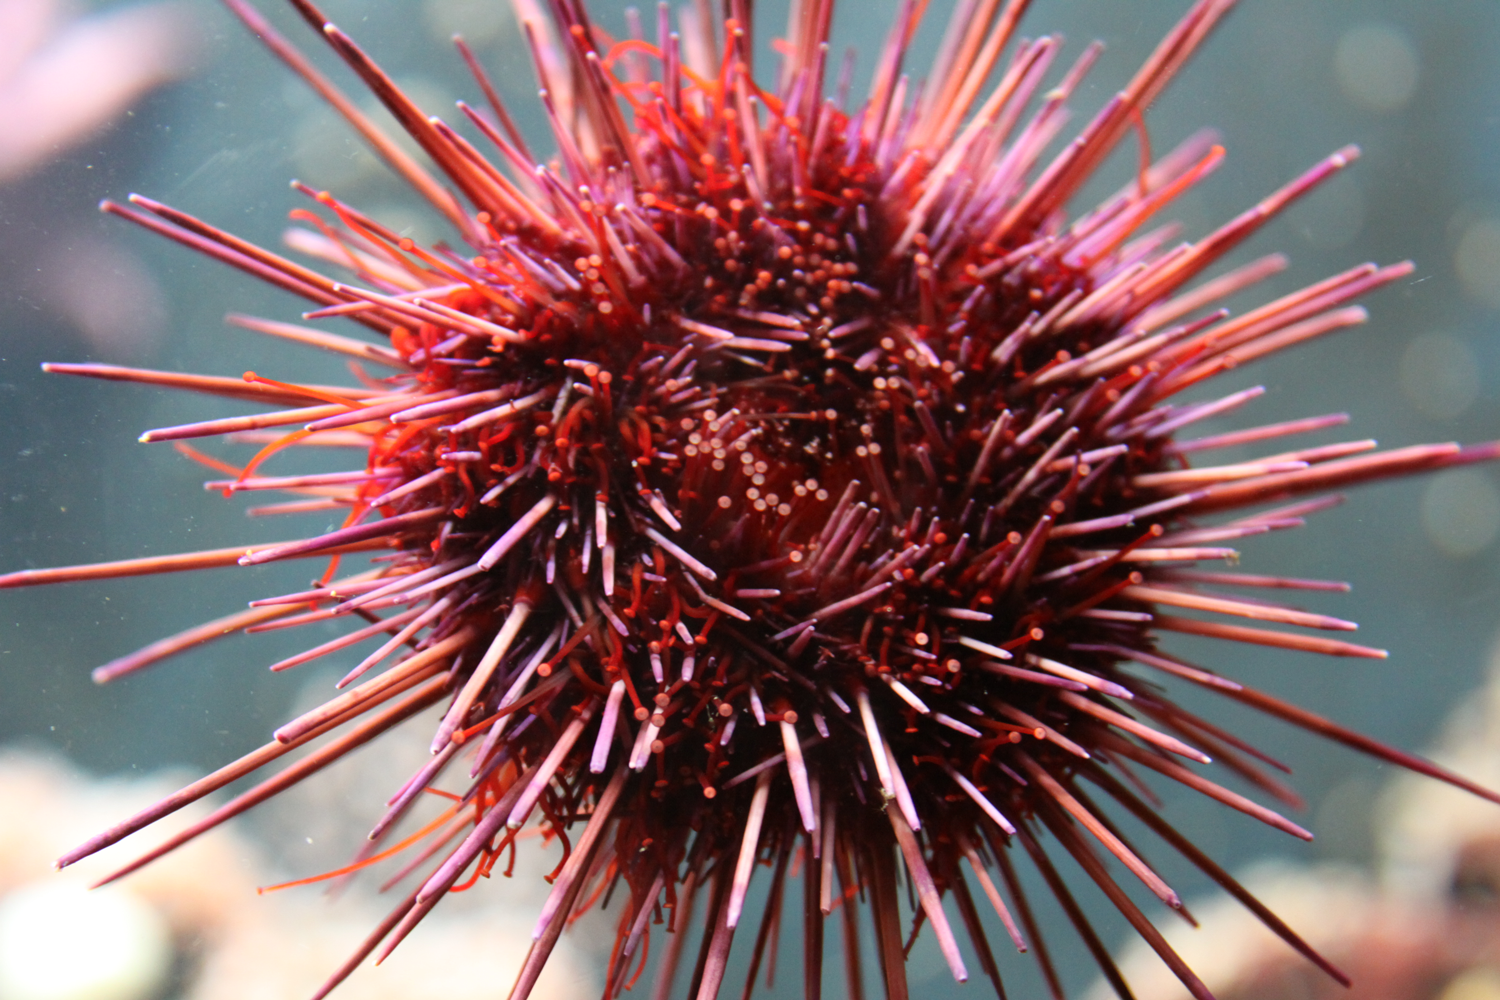 Photograph of a living sea urchin in an aquarium exhibit.